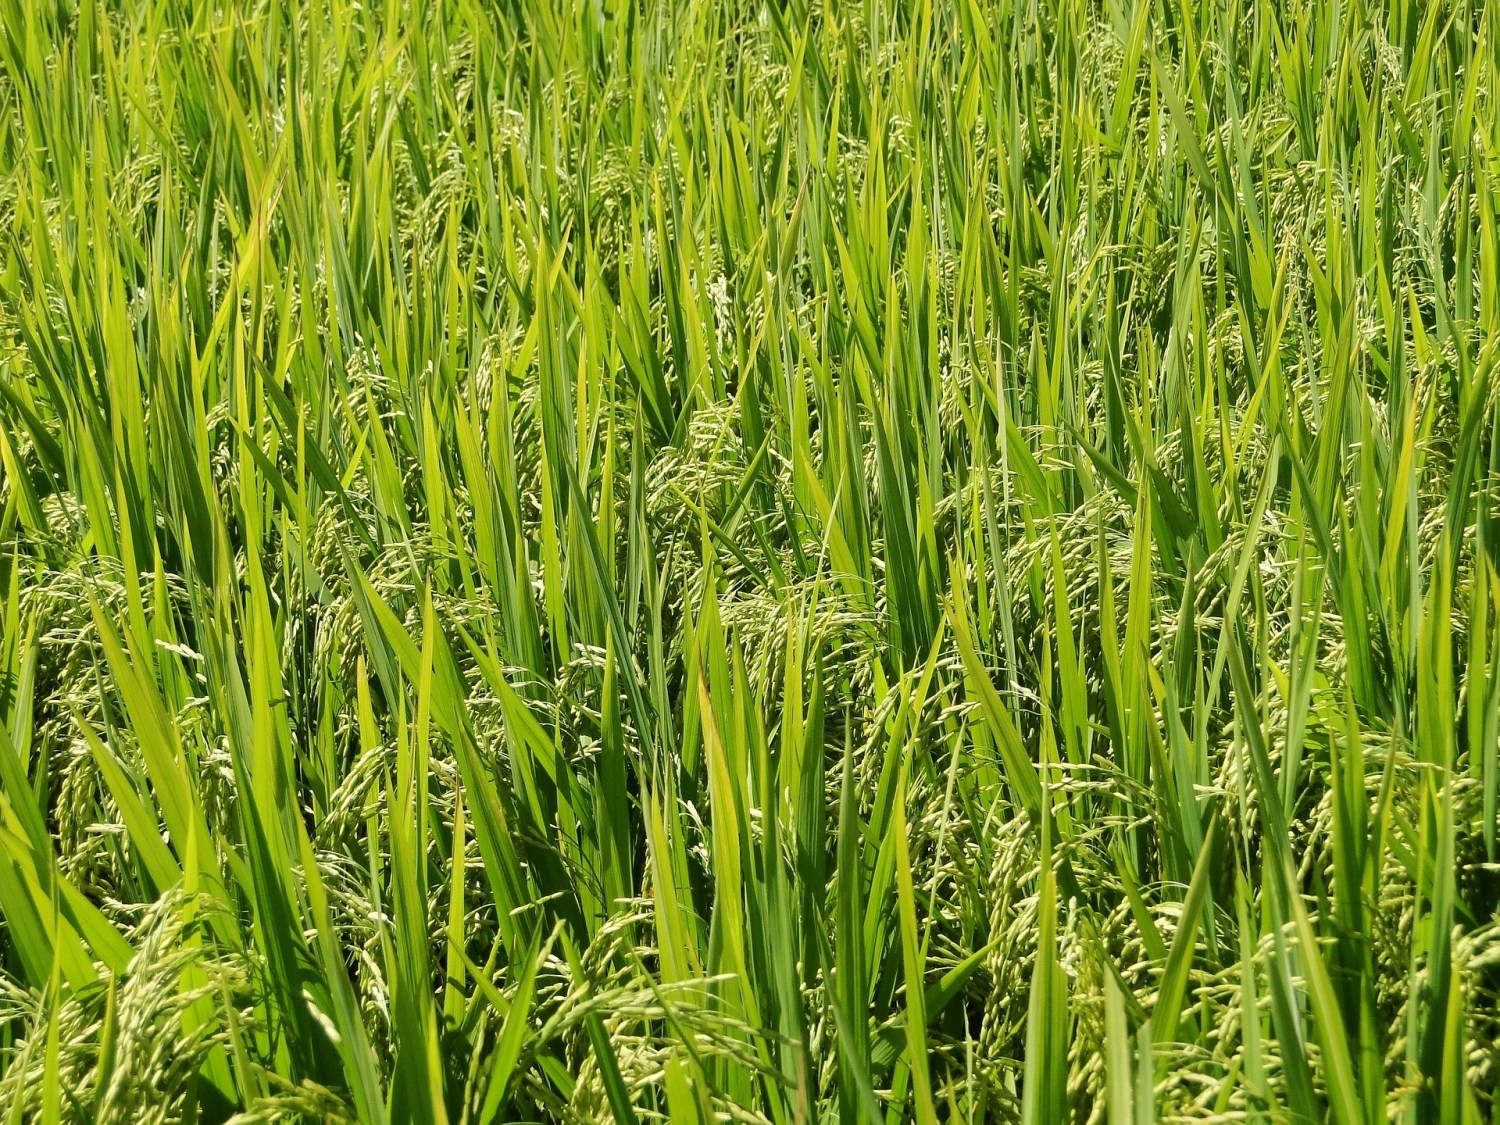 Bioativador no arroz rende até 500 kg a mais por hectare